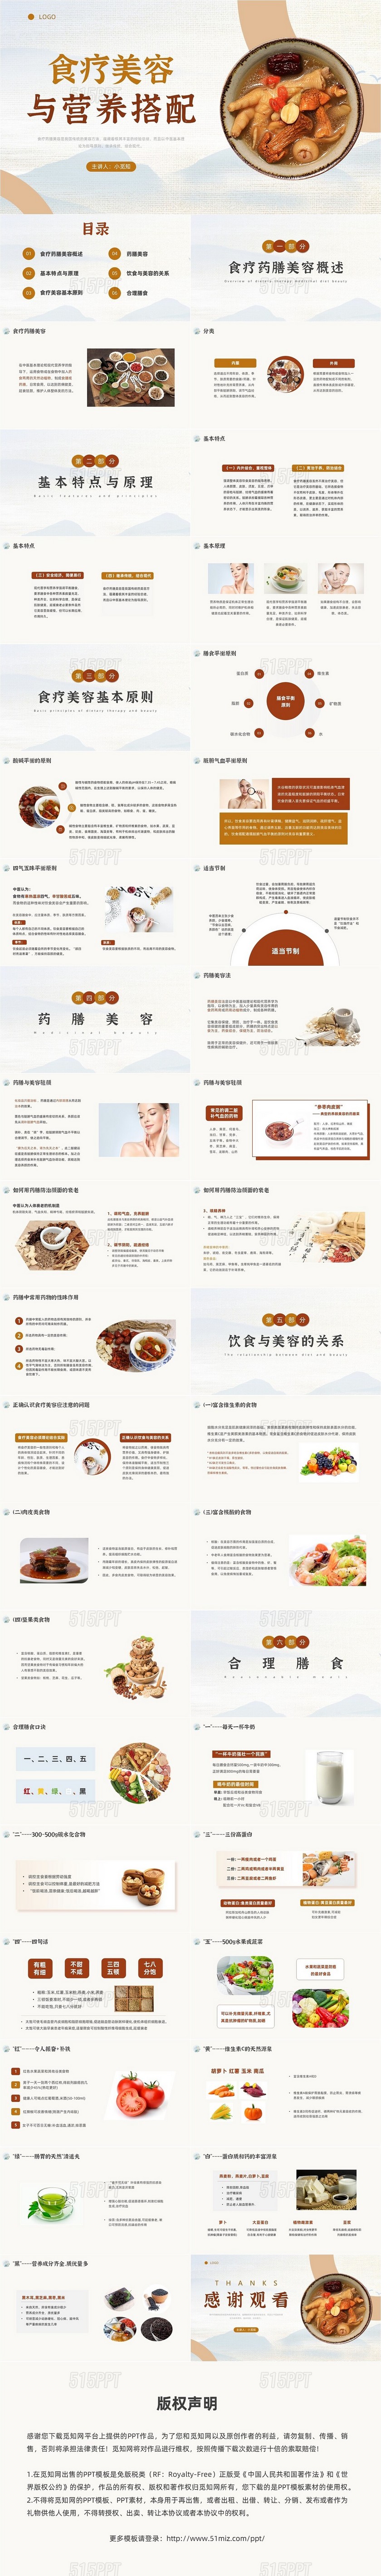 中医美容中国风食疗美容与营养搭配膳食中医培训讲座课件